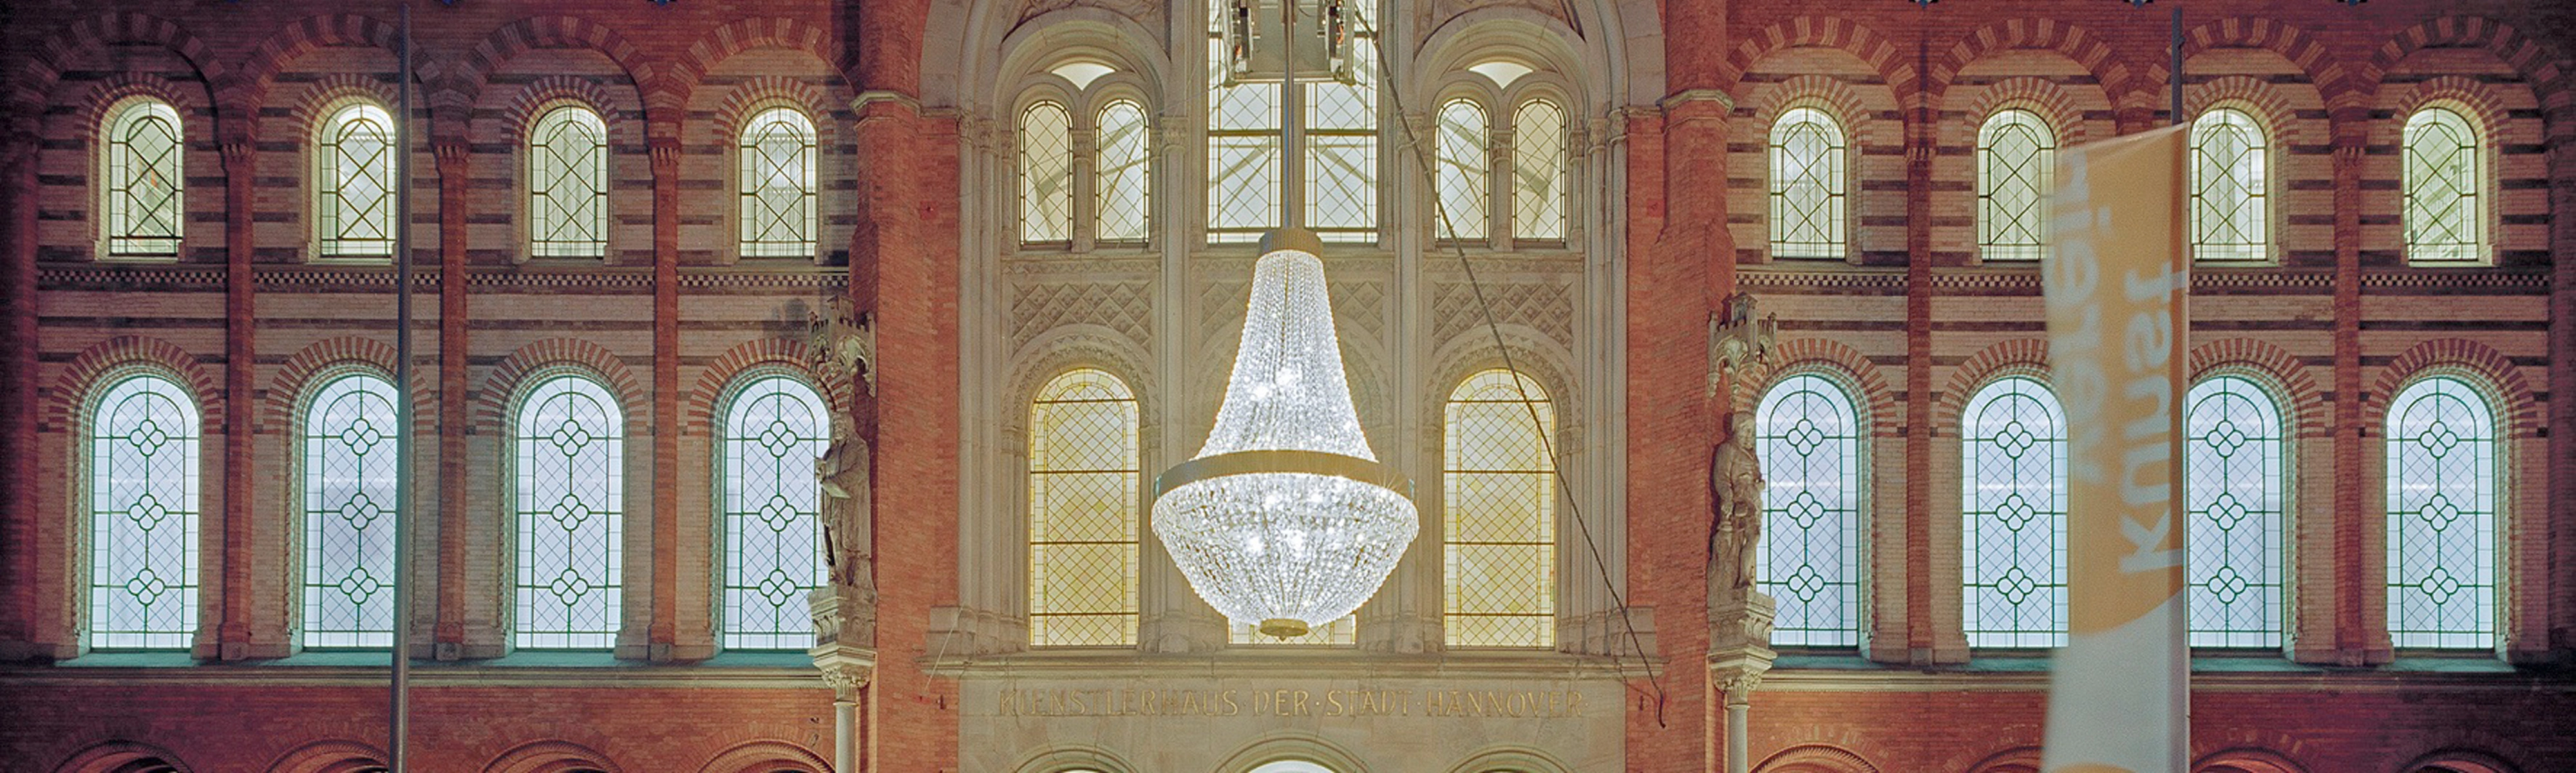 Ansicht der Front des Künstlerhauses Hannover mit der Installation „Das große Leuchten” von Stephan Huber (Ausschnitt) 